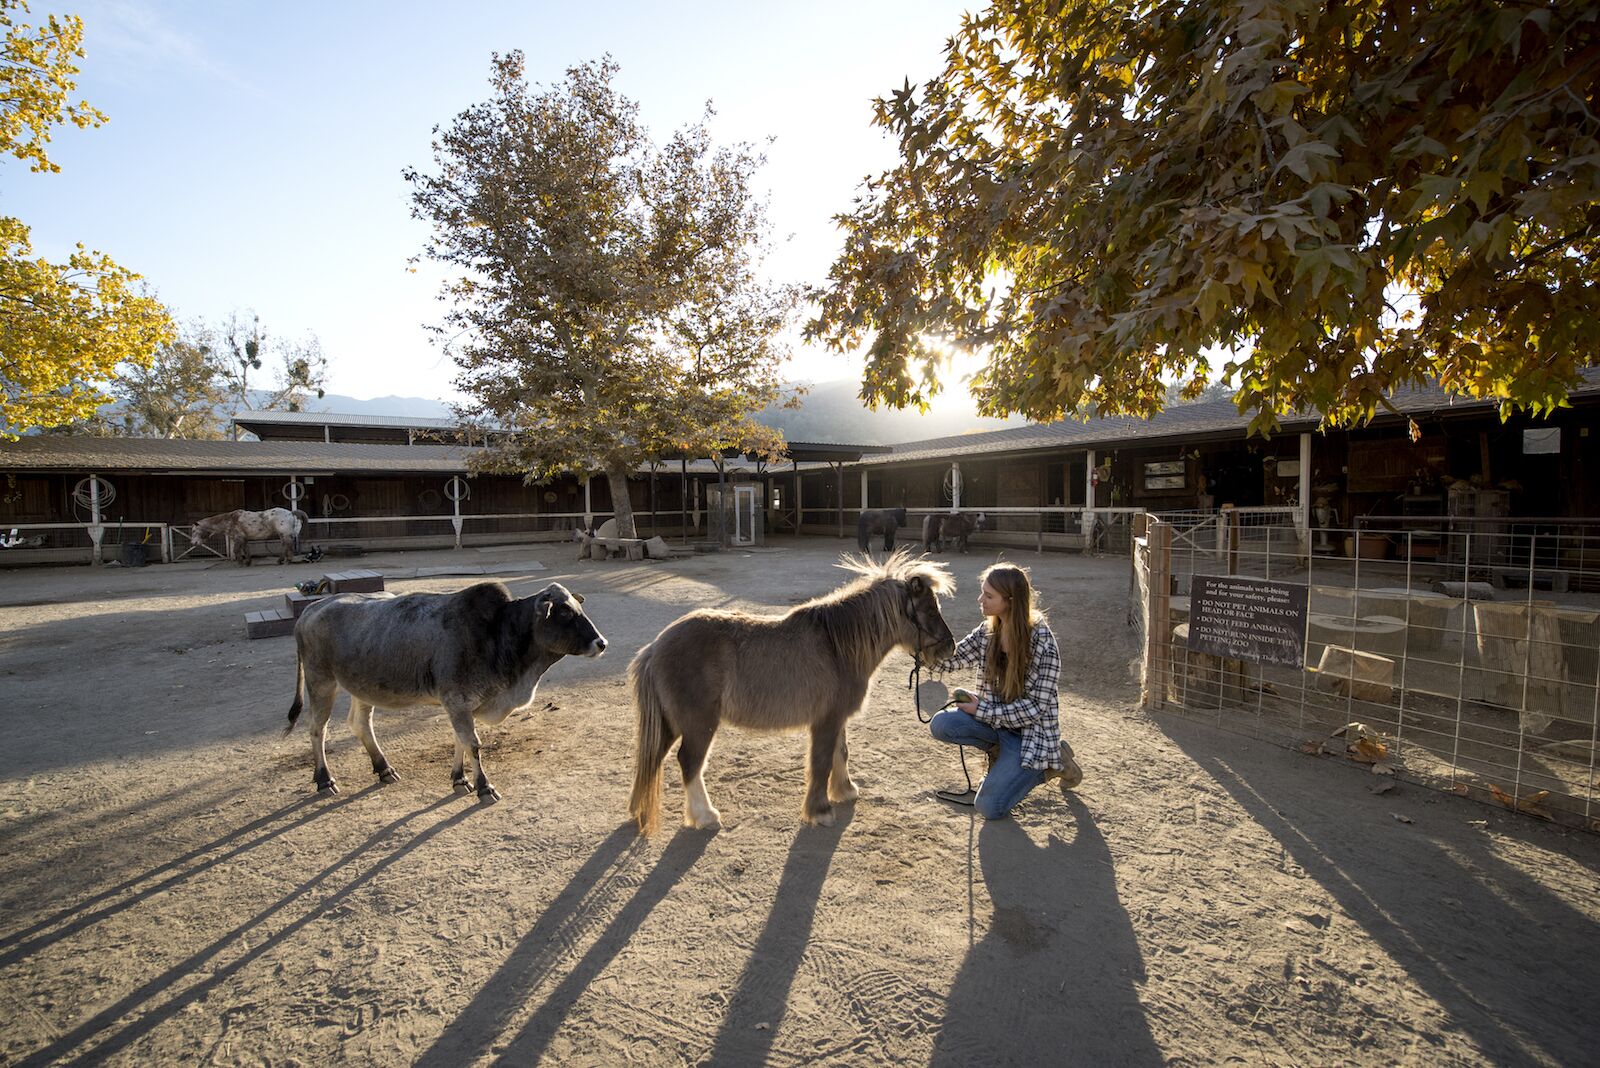 Barnyard and horse at Alisal Ranch